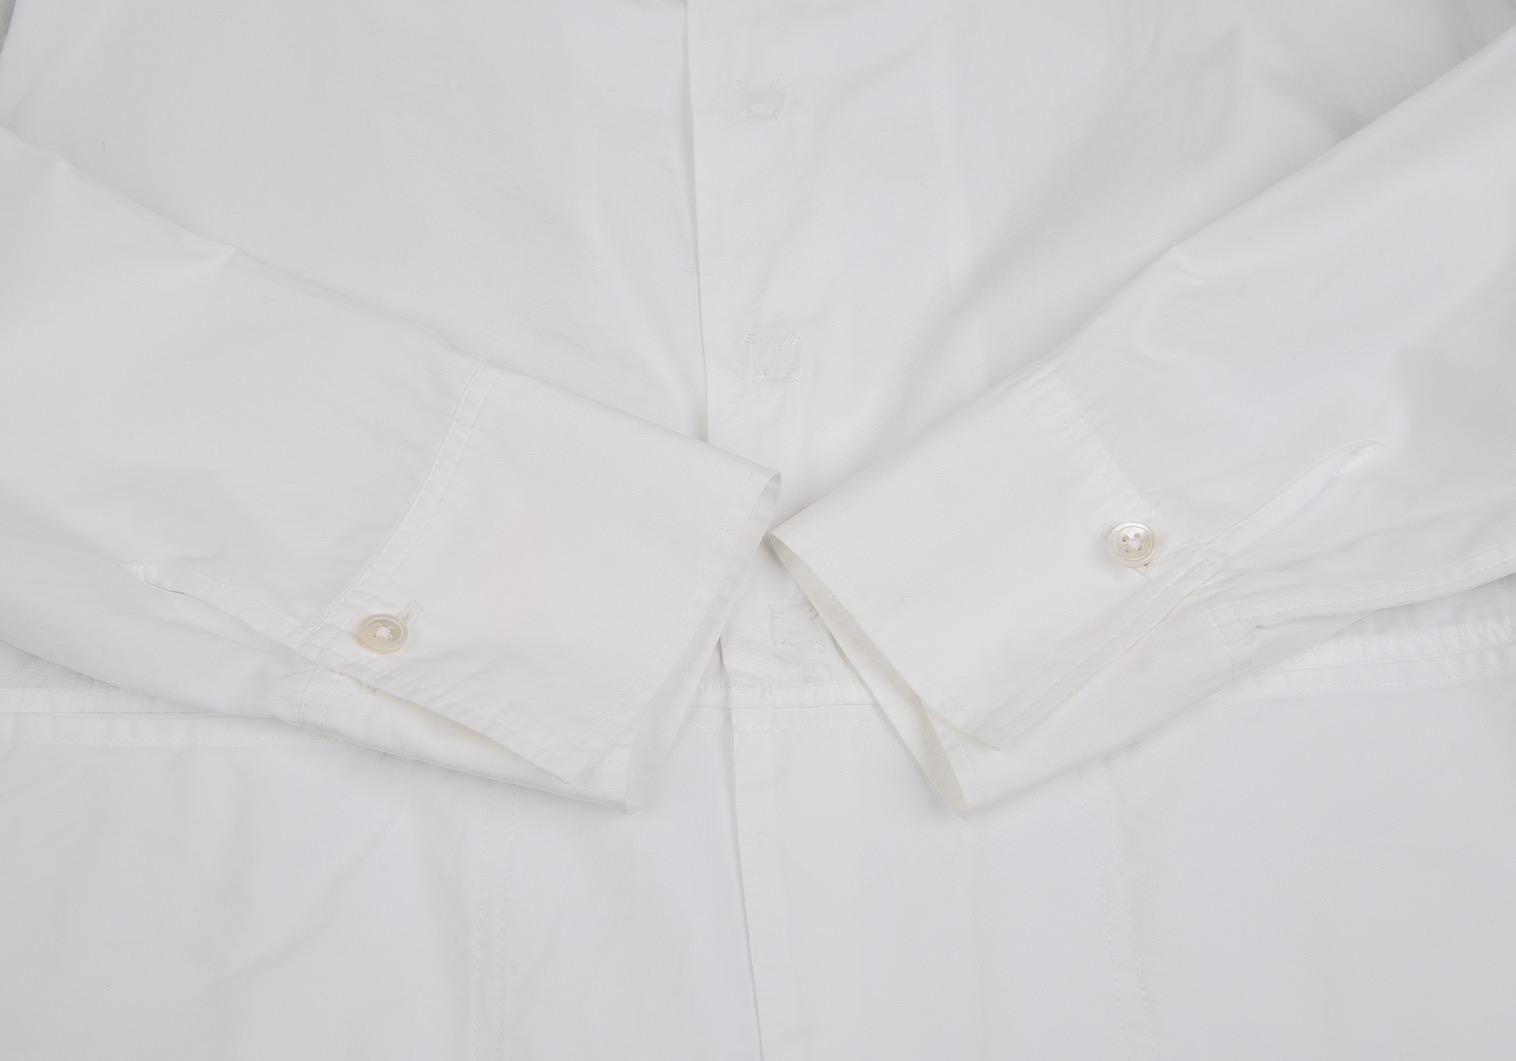 ワイズY's ポケットデザインスナップボタンシャツ 白M位